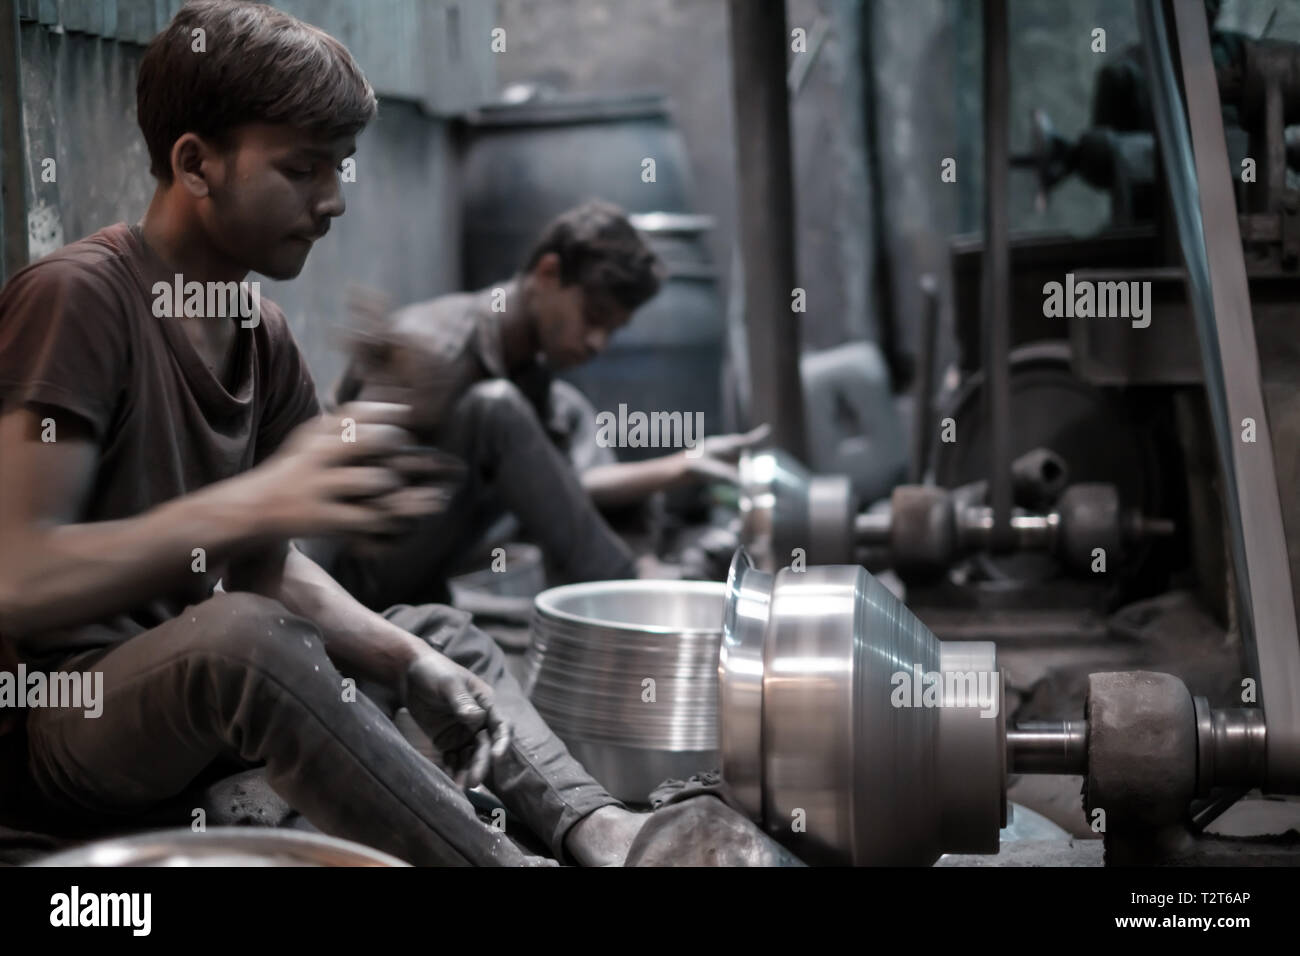 Die jungen Männer arbeiten in Aluminium Metall Workshops in Zinzira Bezirk, Dhaka, Bangladesch. Giftige Aluminium Staub herum, kein Schutz. Schalen Produktion. Stockfoto